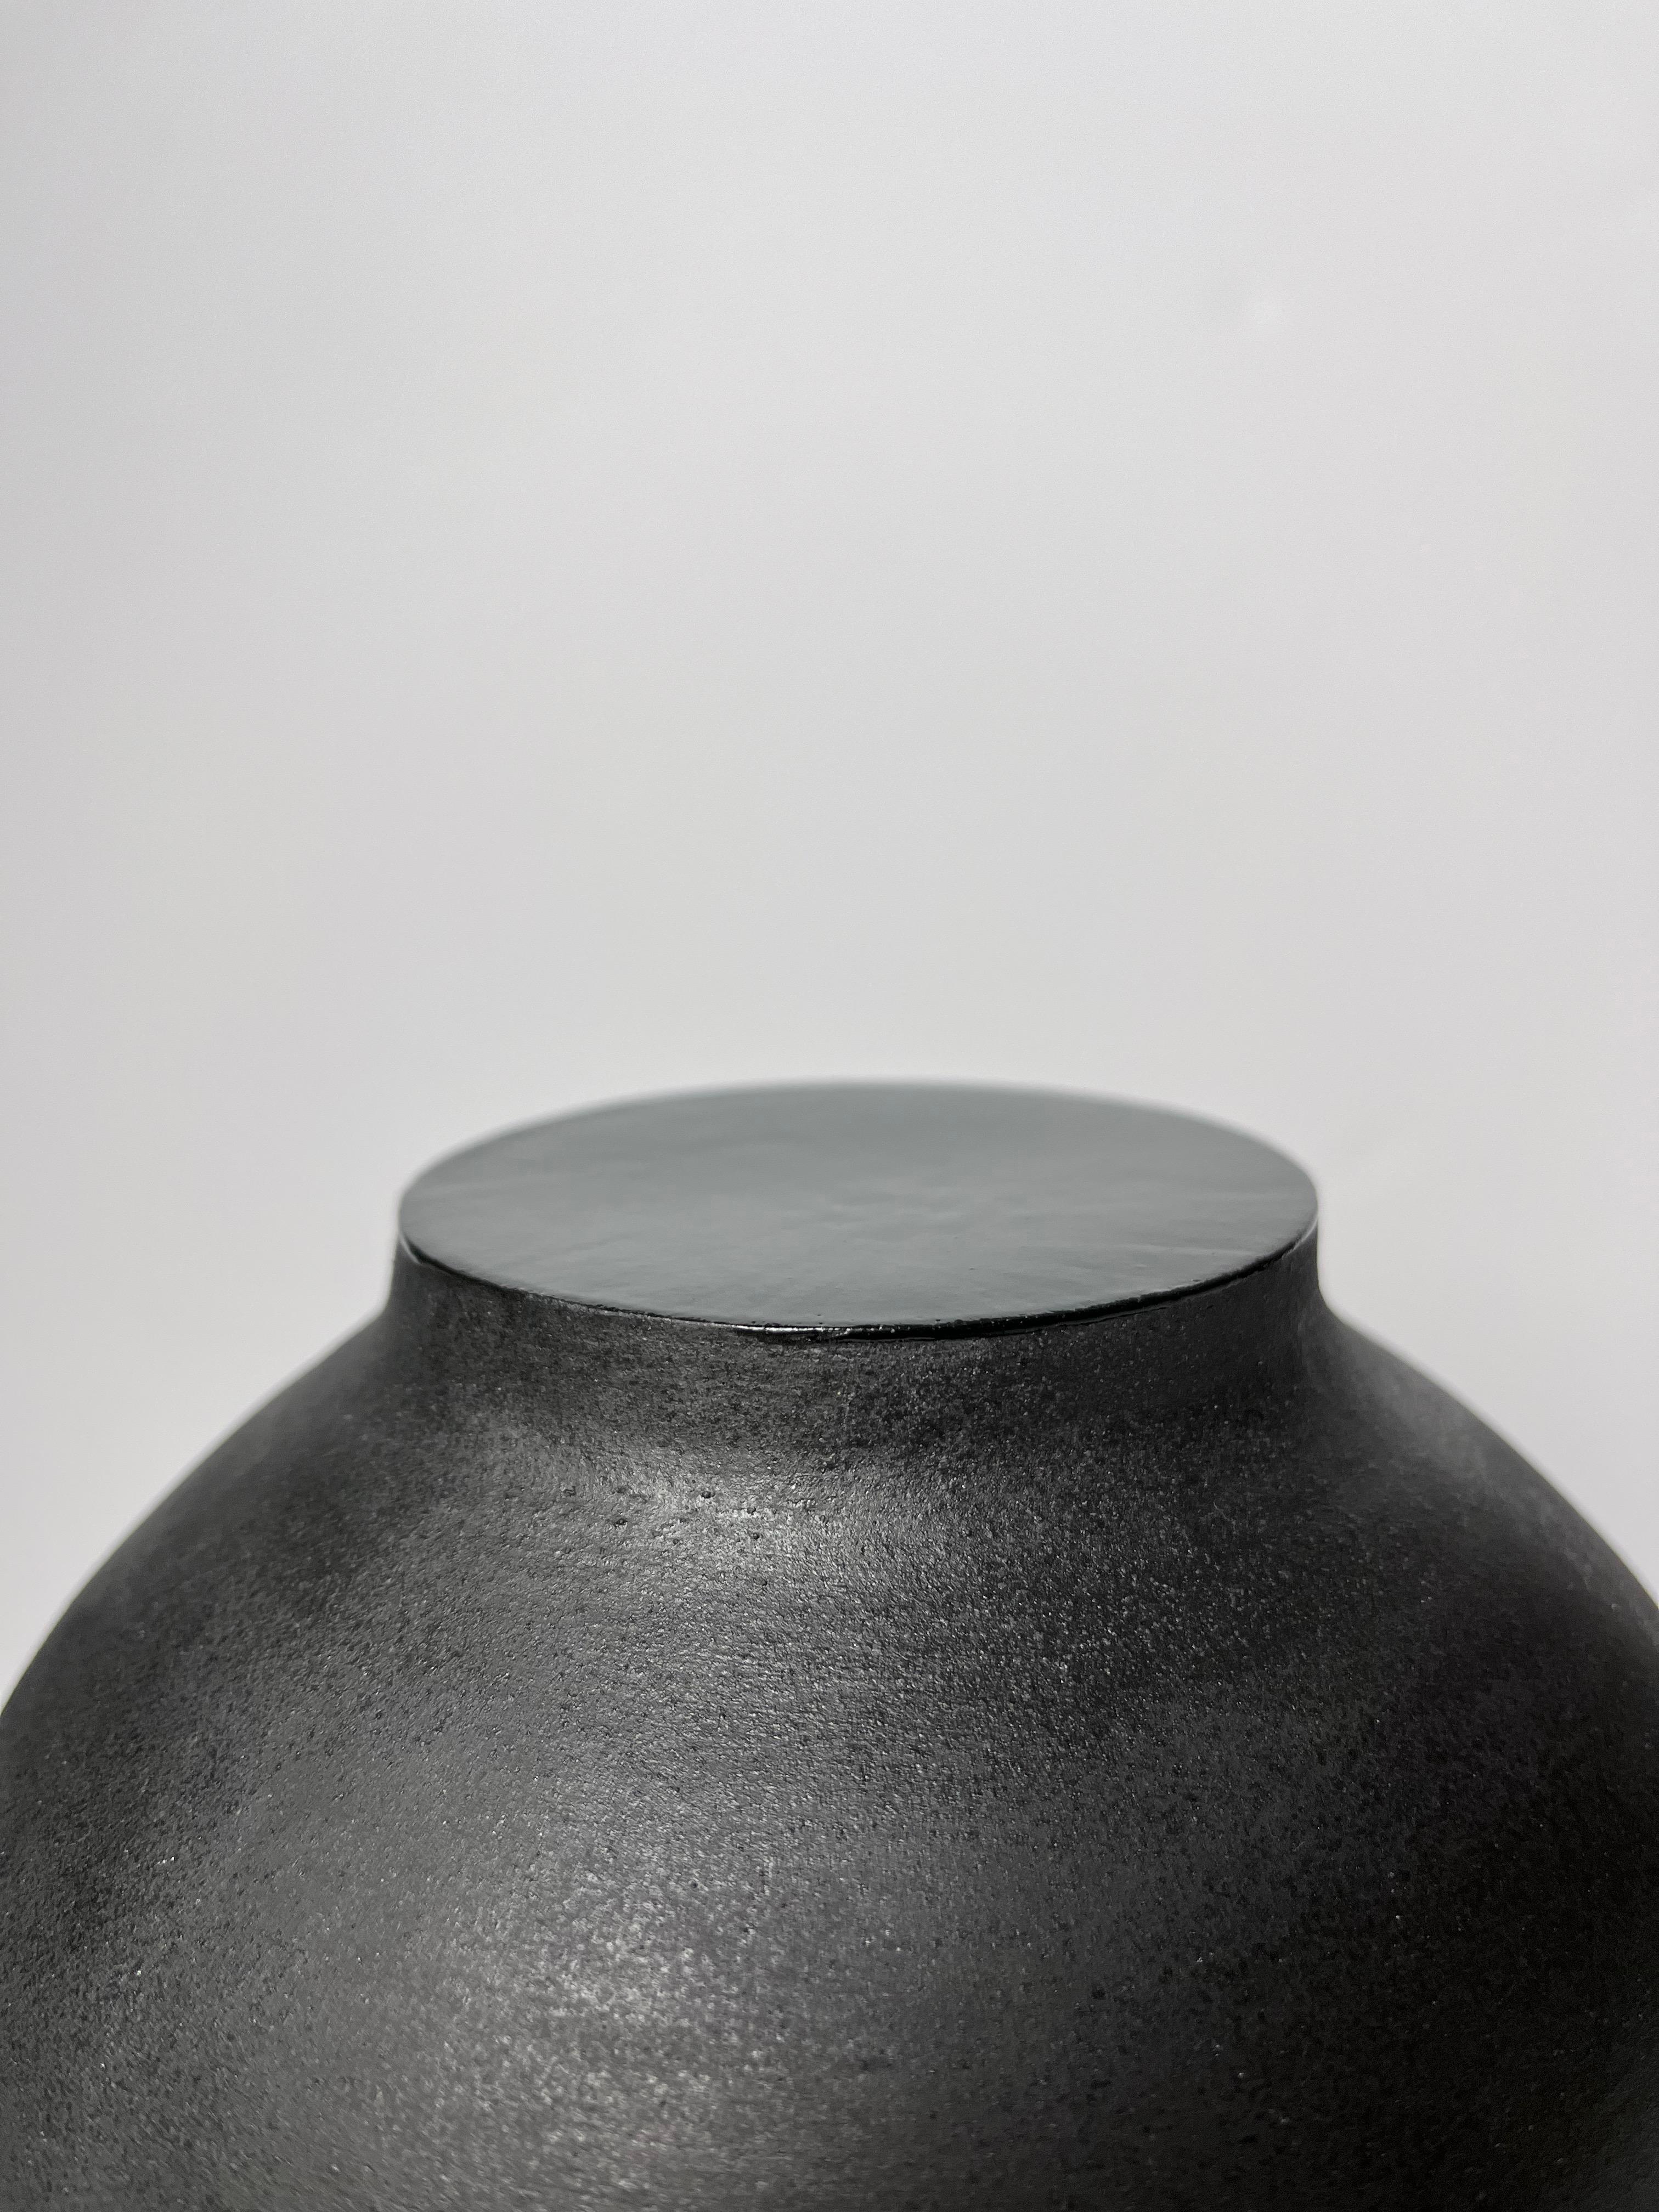 Vase aus schwarzem Steingut mit zentraler Öffnung und zementgrauem Steingut im Inneren. Oberer Teil des Halses mit schwarzer Emaillierung geschlossen.
Vollständig handgefertigt.